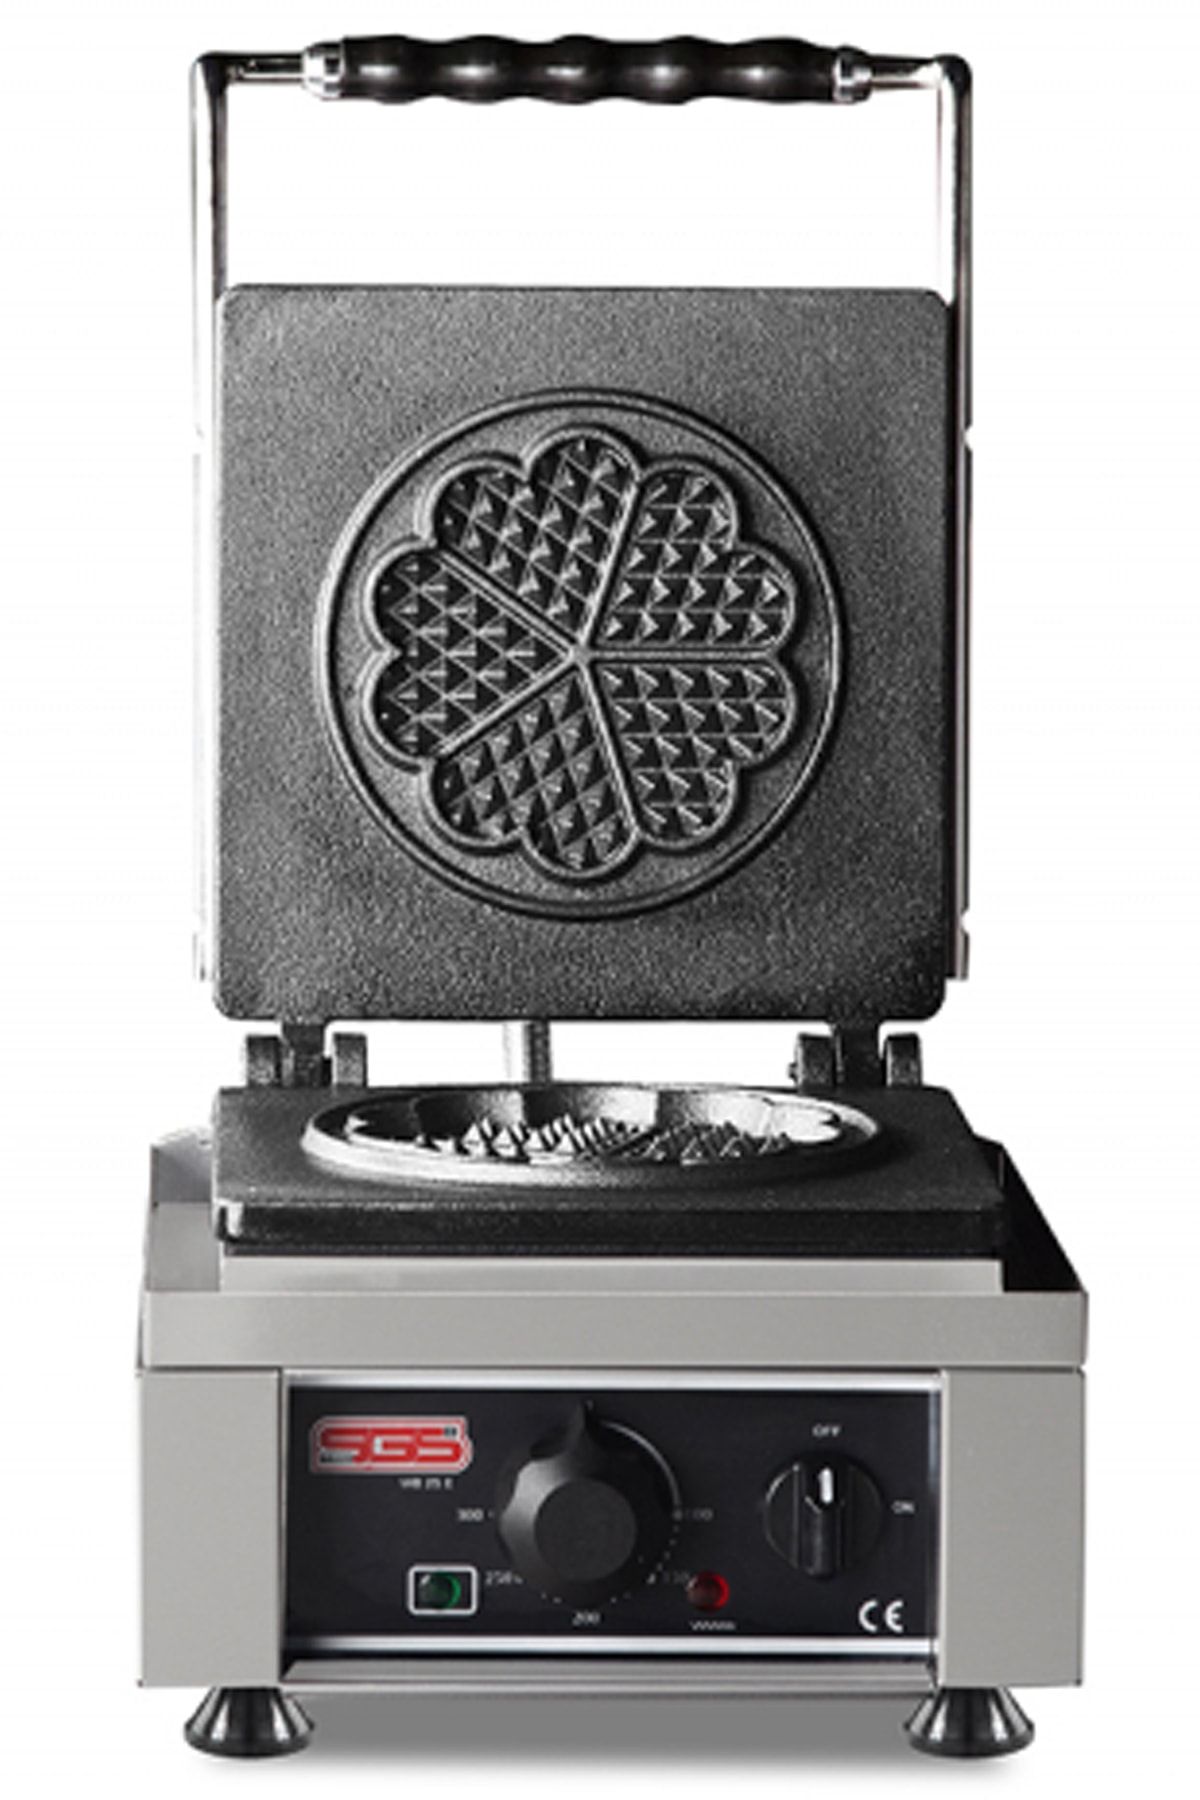 SGS OVEN Sgs Waffle Makinesi Wb 25 E Endüstriyel Profesyonel